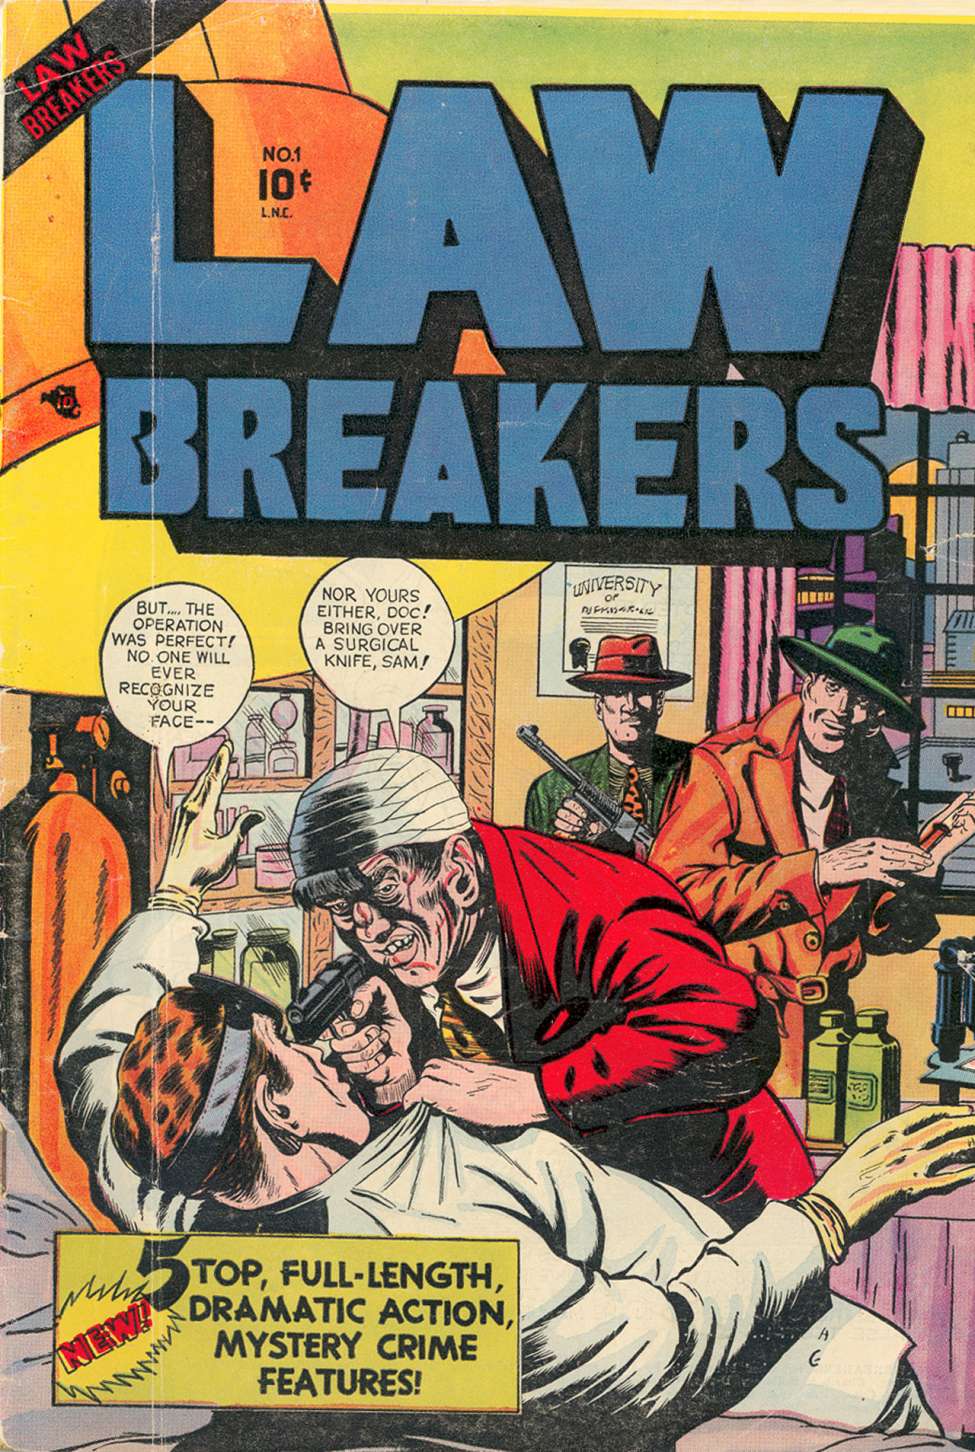 Book Cover For Lawbreakers 1